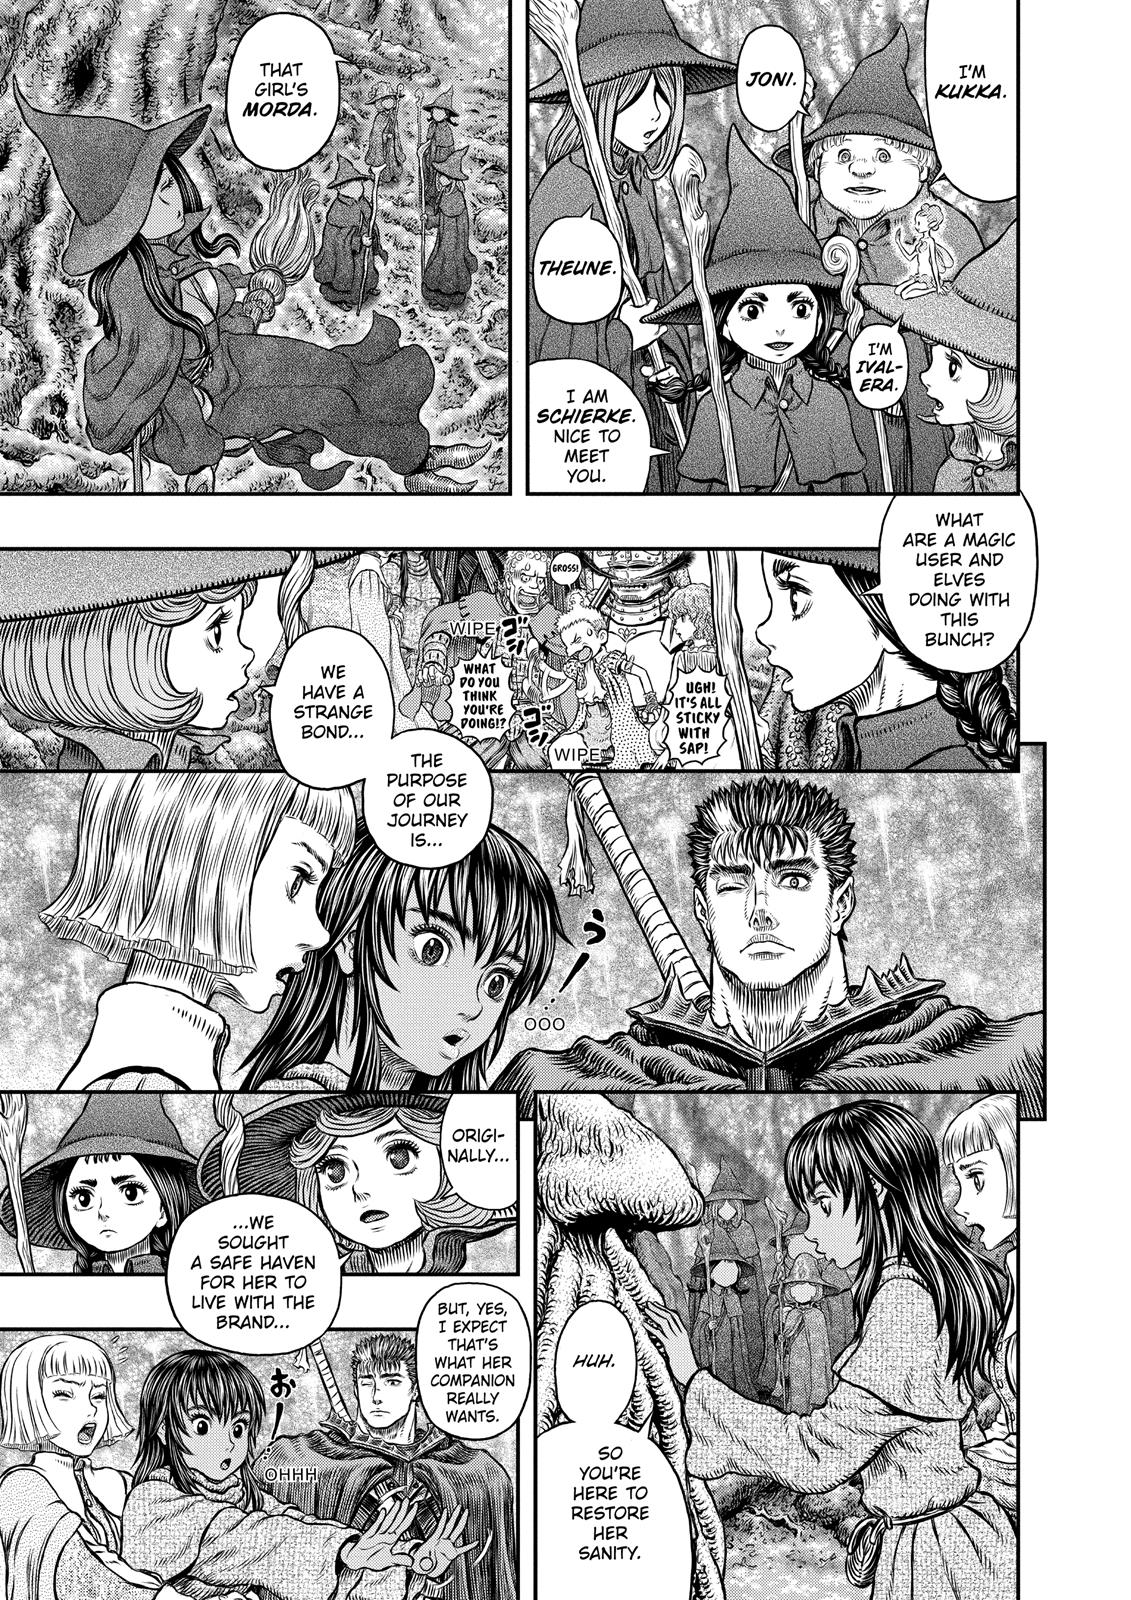 Berserk Manga Chapter 344 image 12